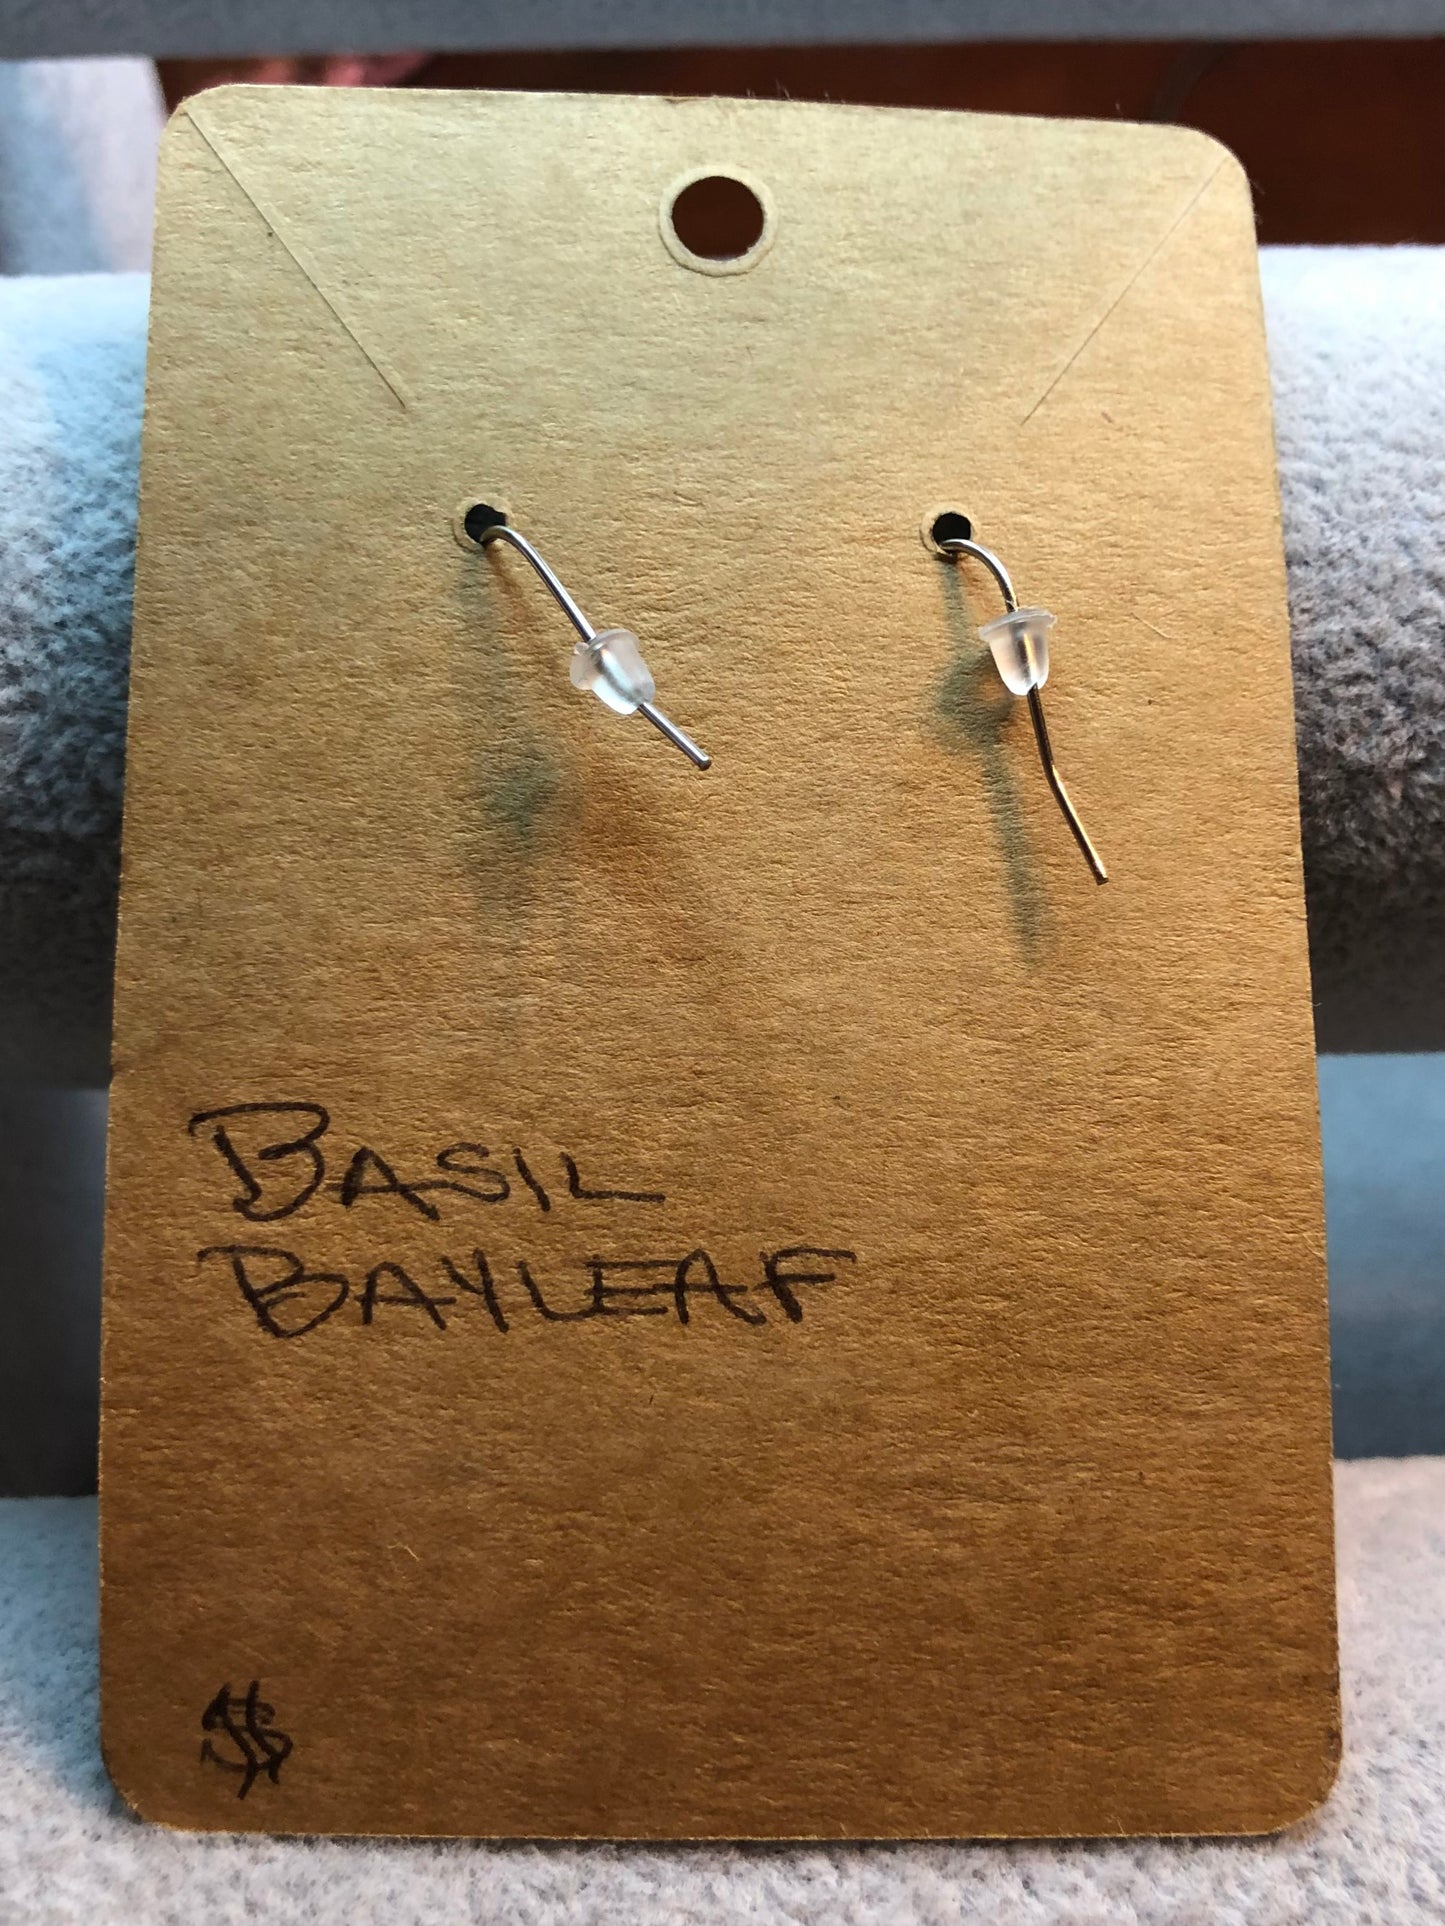 Bay leaf and Basil Earrings Jewelry